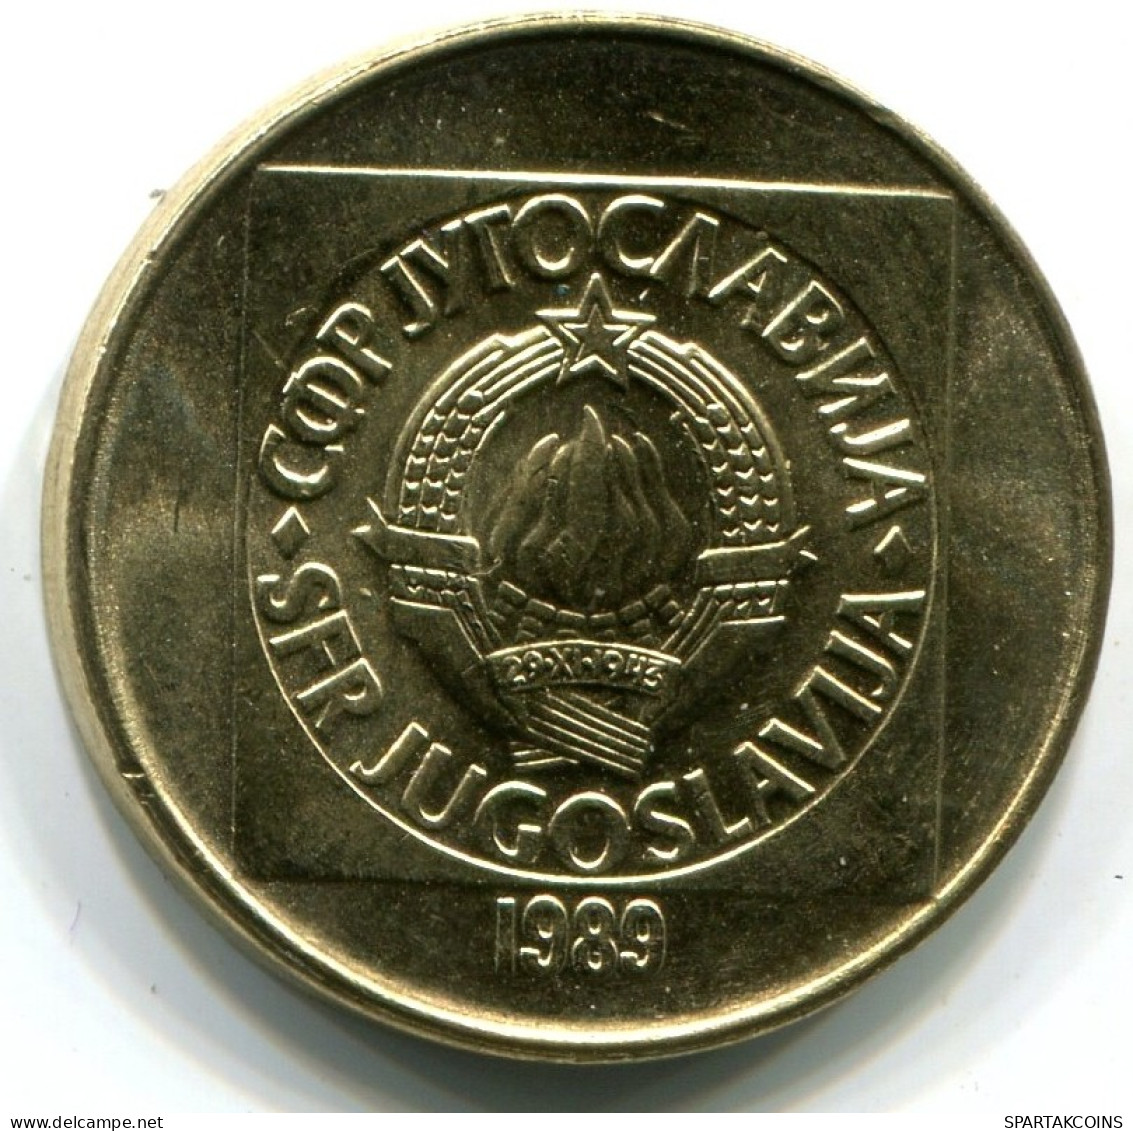 100 DINARA 1989 YUGOSLAVIA UNC Coin #W11193.U.A - Yougoslavie